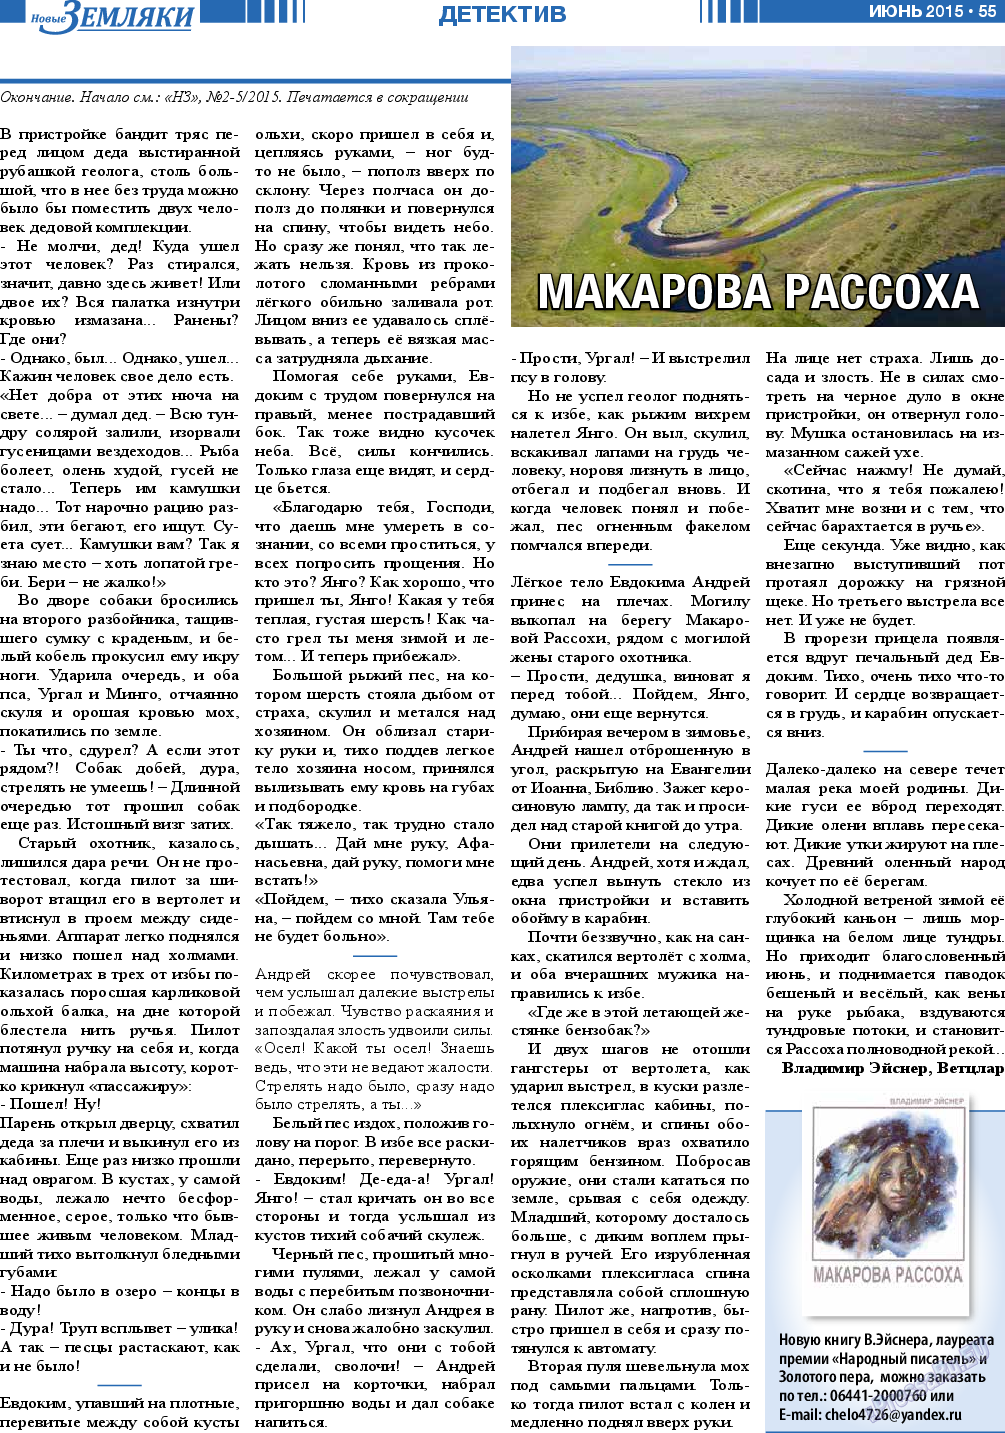 Новые Земляки, газета. 2015 №6 стр.55